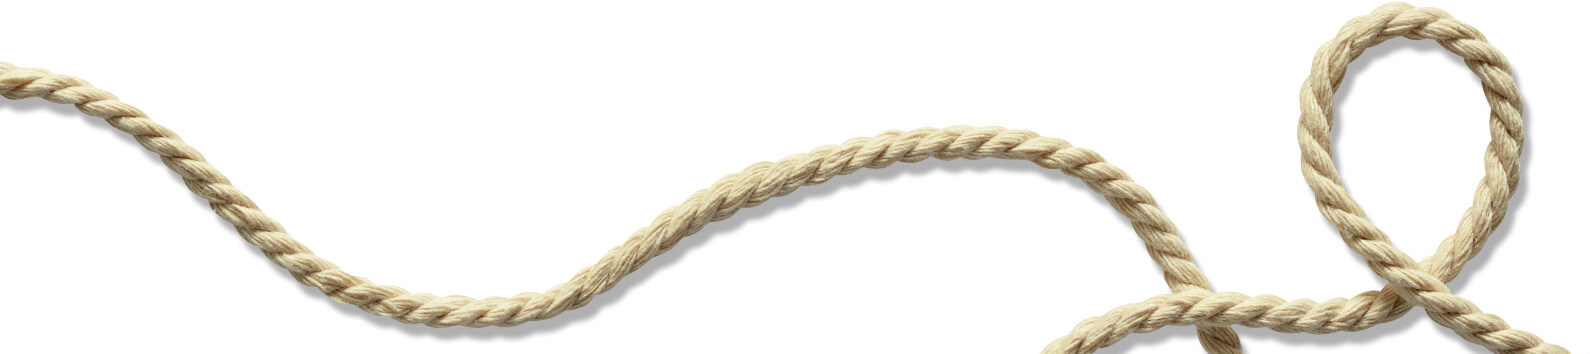 corde longue